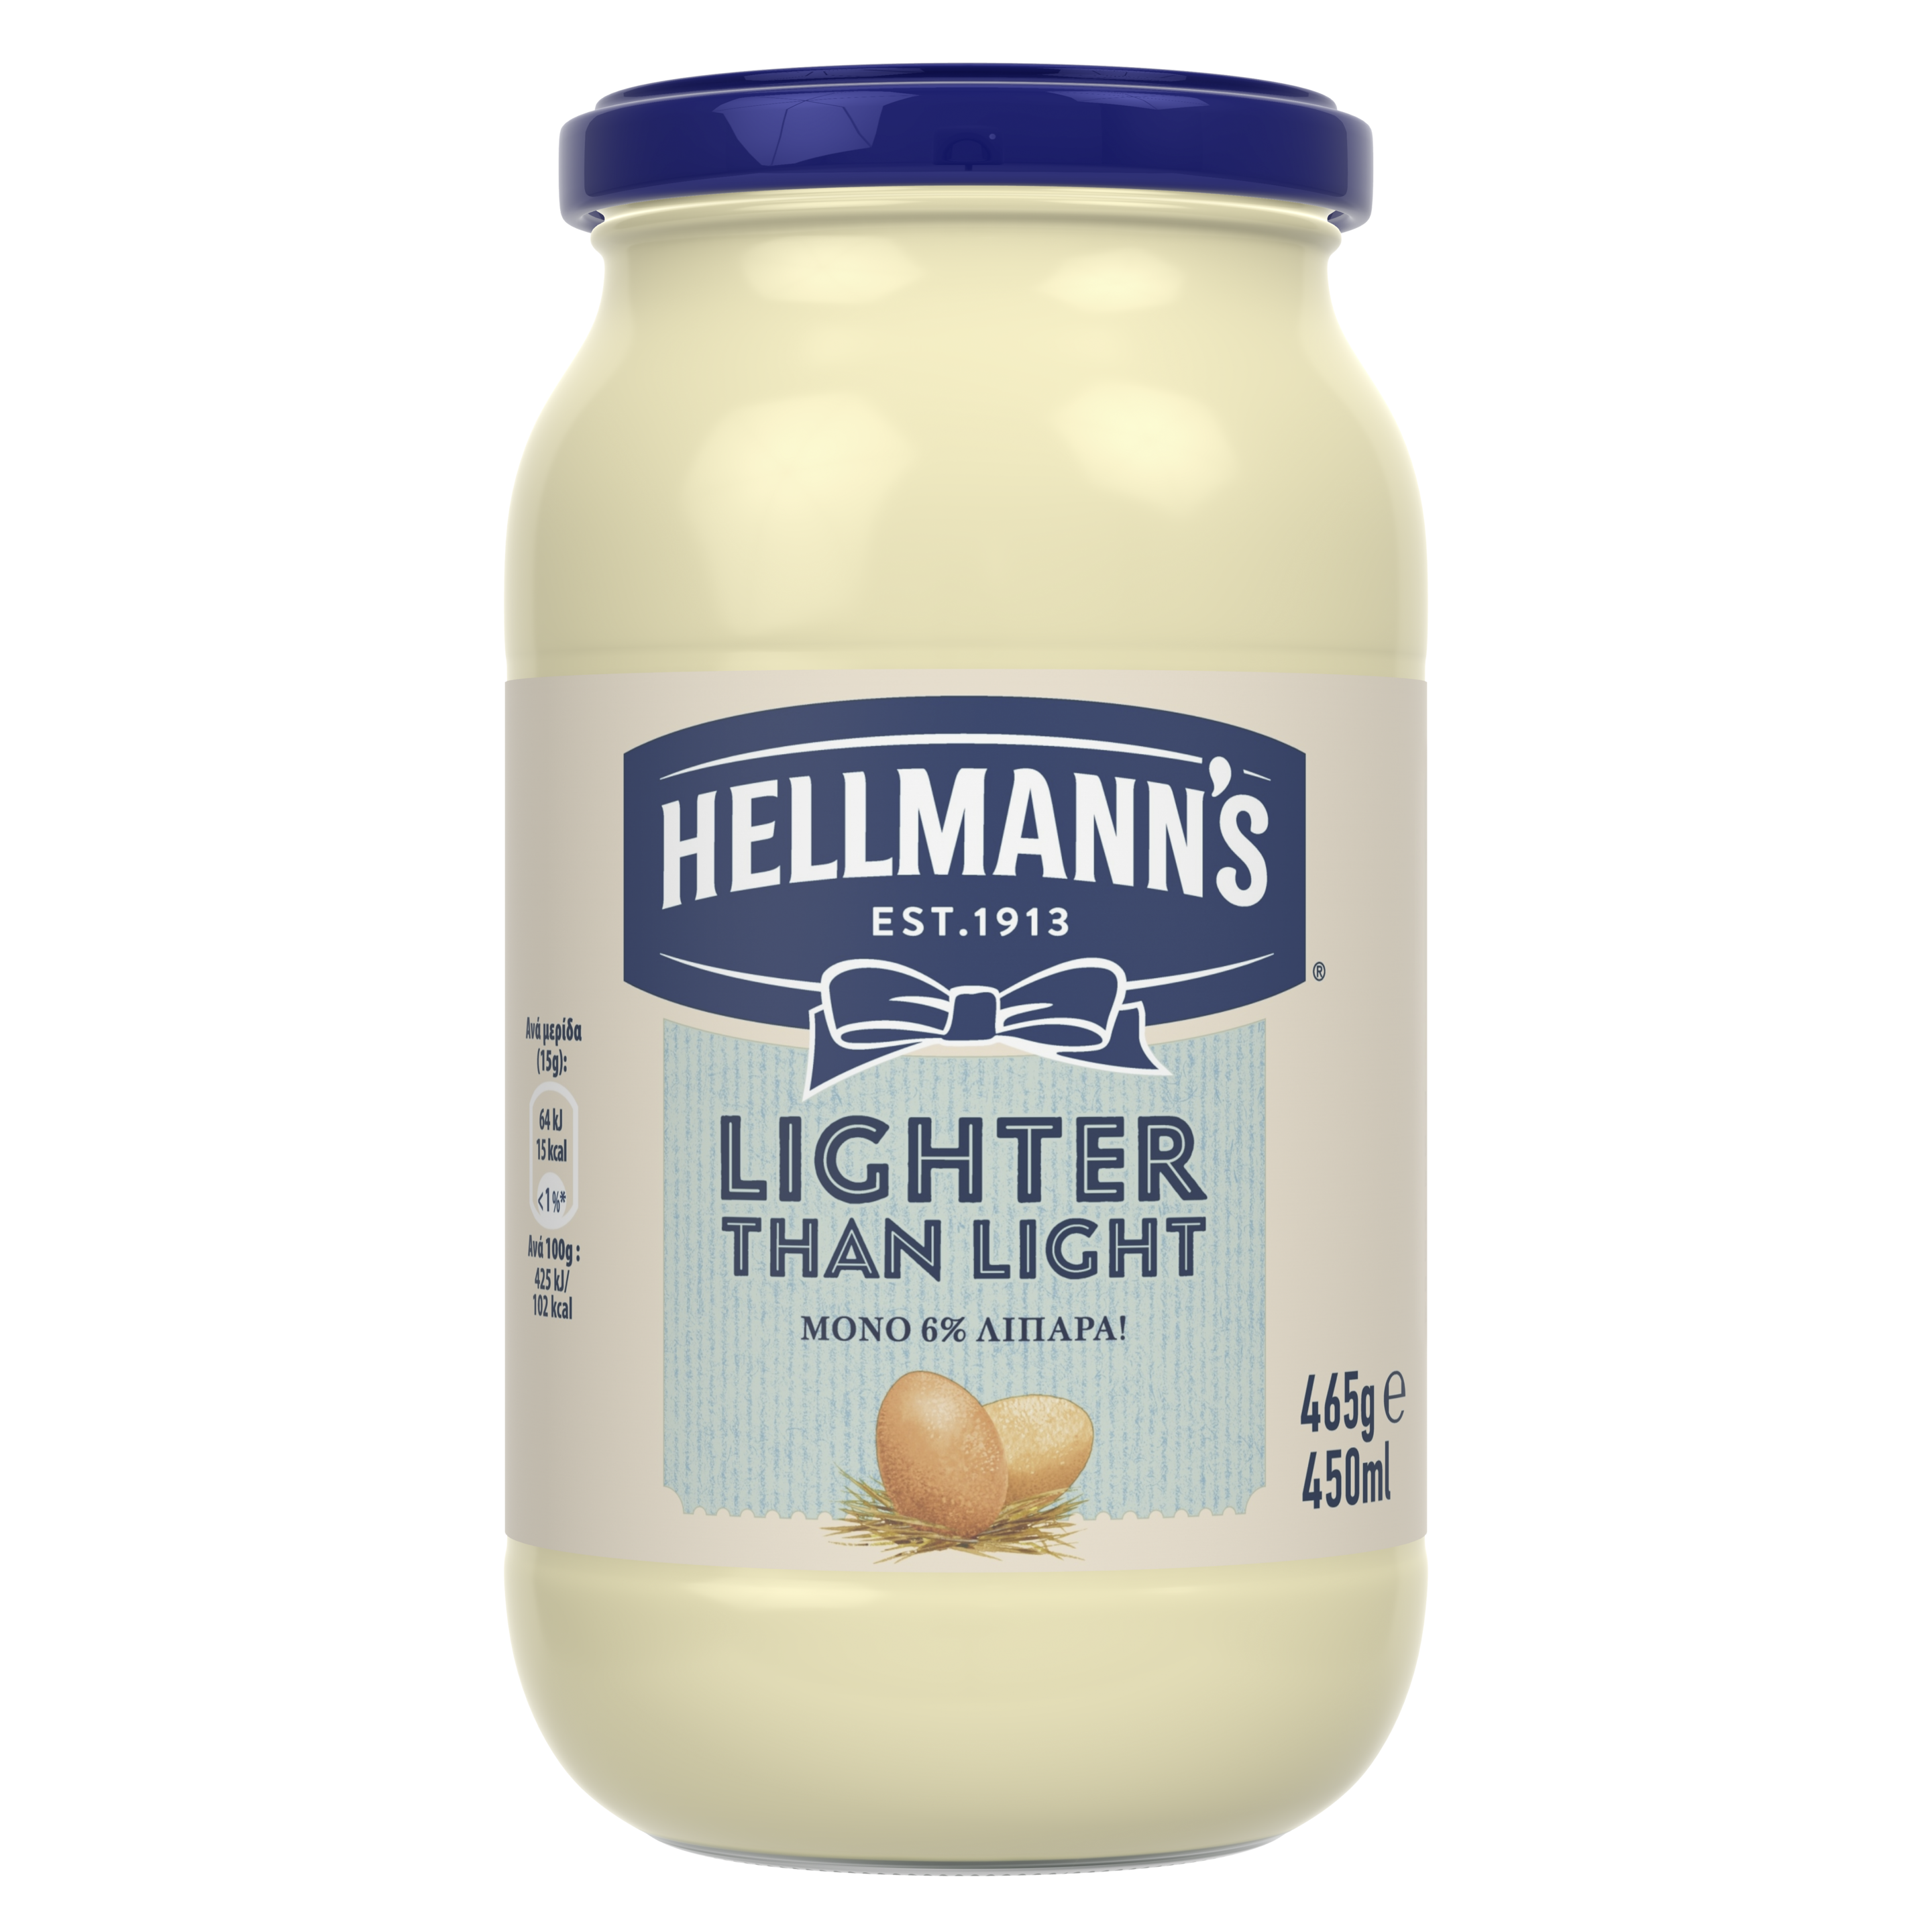 Hellmann's Lighter than light Μαγιονέζα